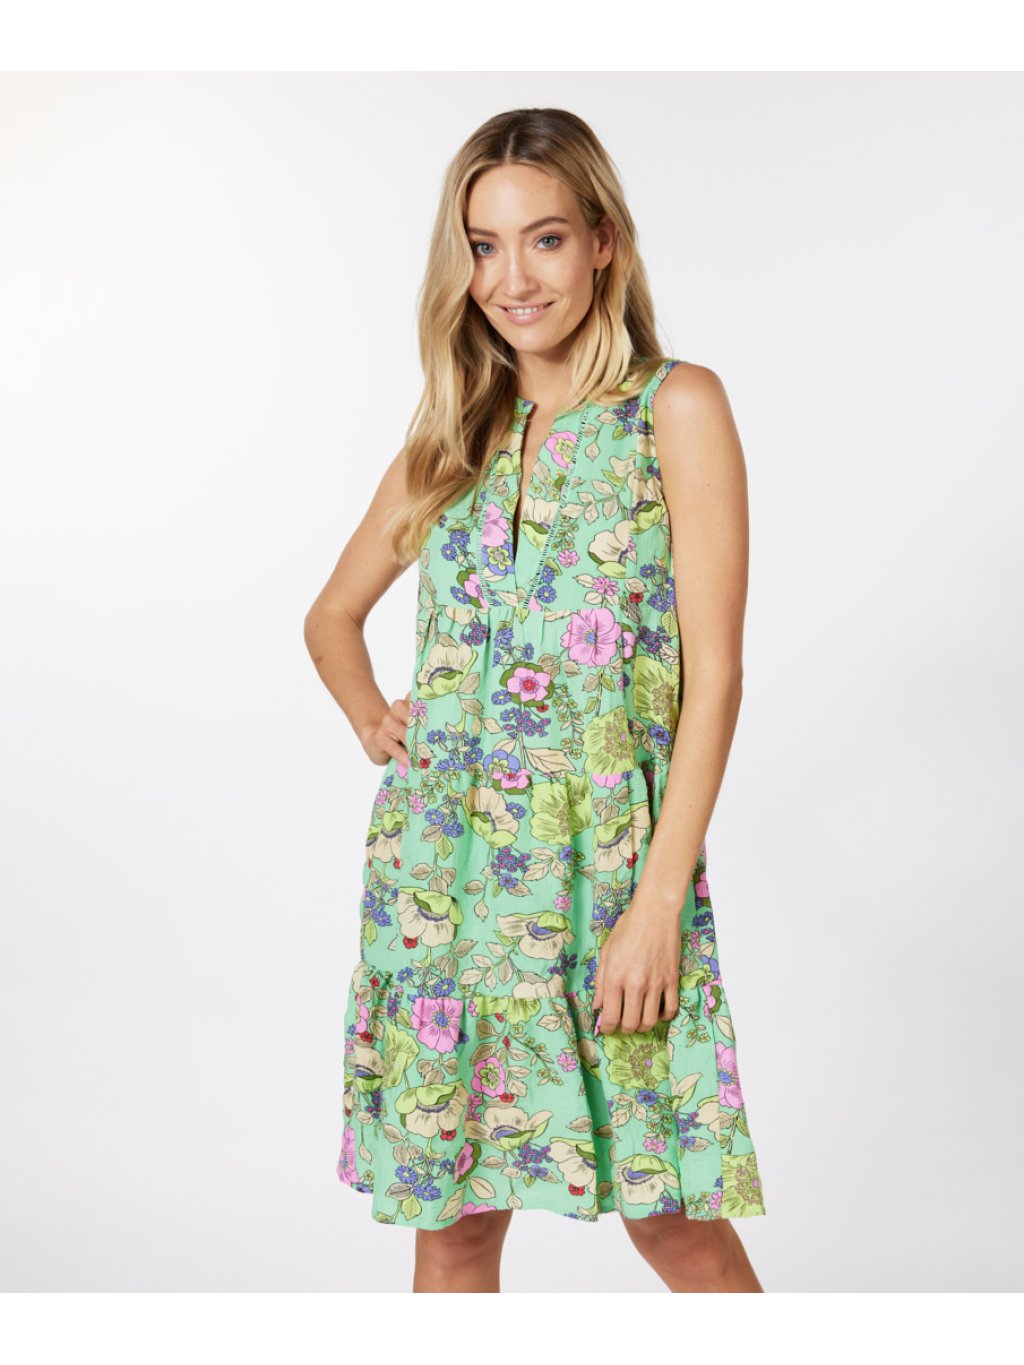 Šaty Esqualo 14230 zelené kaskádové s květy